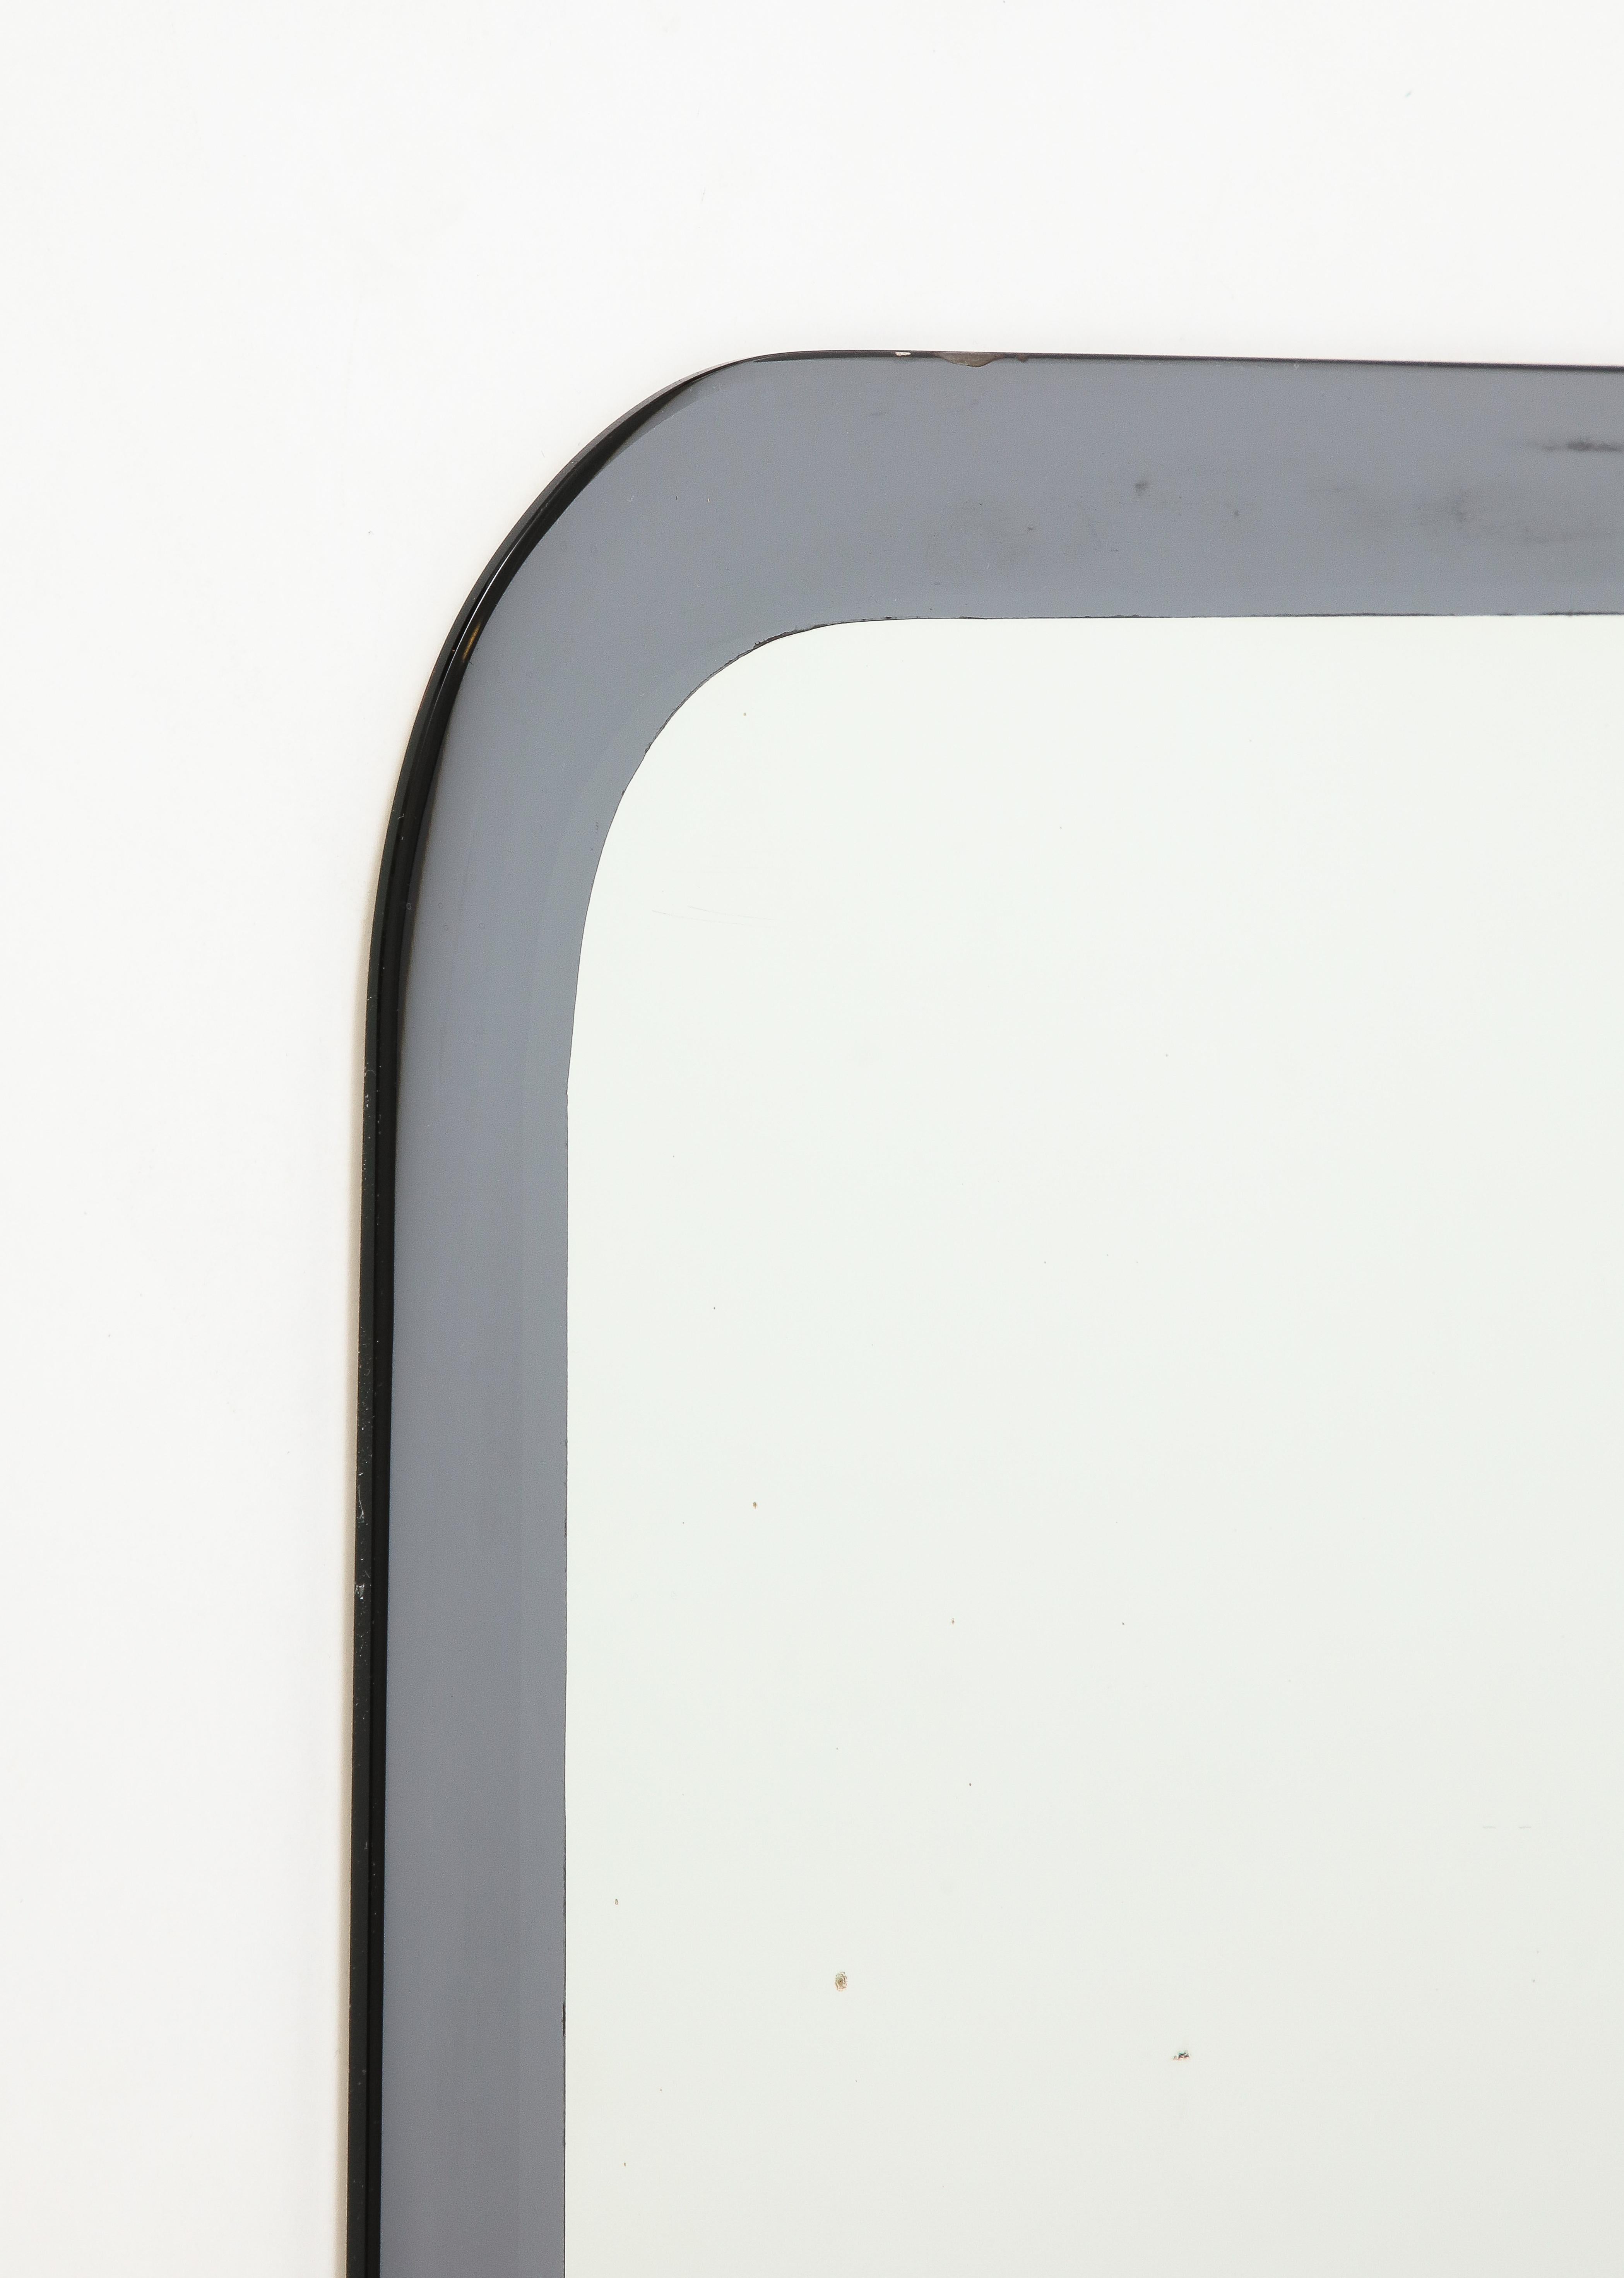 Ein italienischer Ganzglasspiegel mit silbernem/grauem Rand von Metalvetro Galvorame, datiert 1967.  Der Spiegel ist sehr gut verarbeitet und schwer. Auf der Rückseite befindet sich das Original Label mit der Unterschrift 